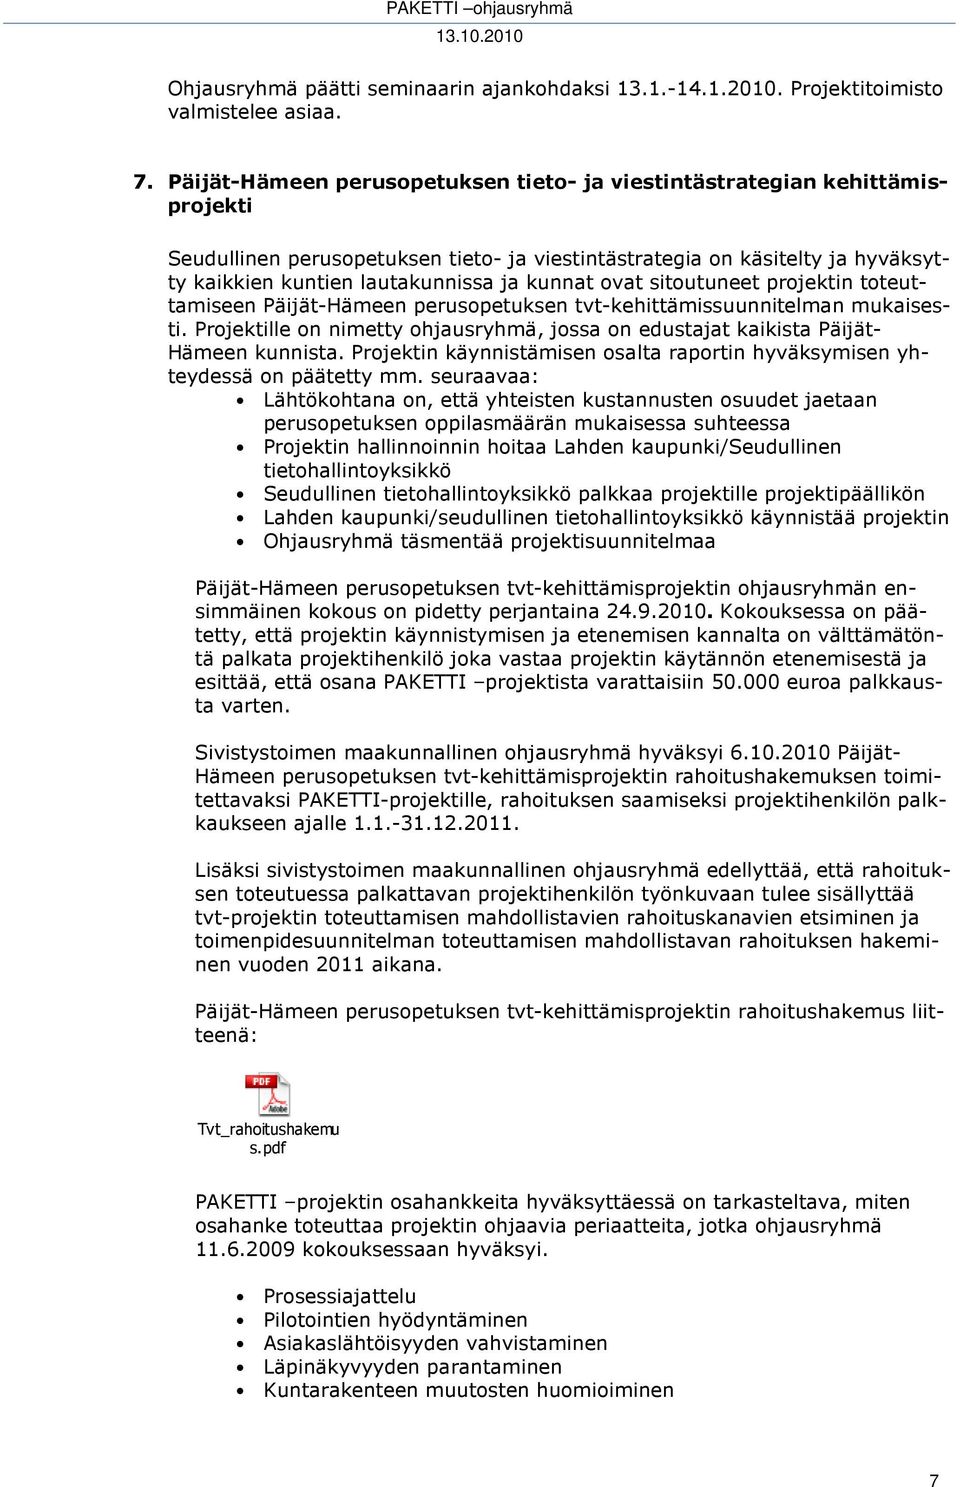 kunnat ovat sitoutuneet projektin toteuttamiseen Päijät-Hämeen perusopetuksen tvt-kehittämissuunnitelman mukaisesti.